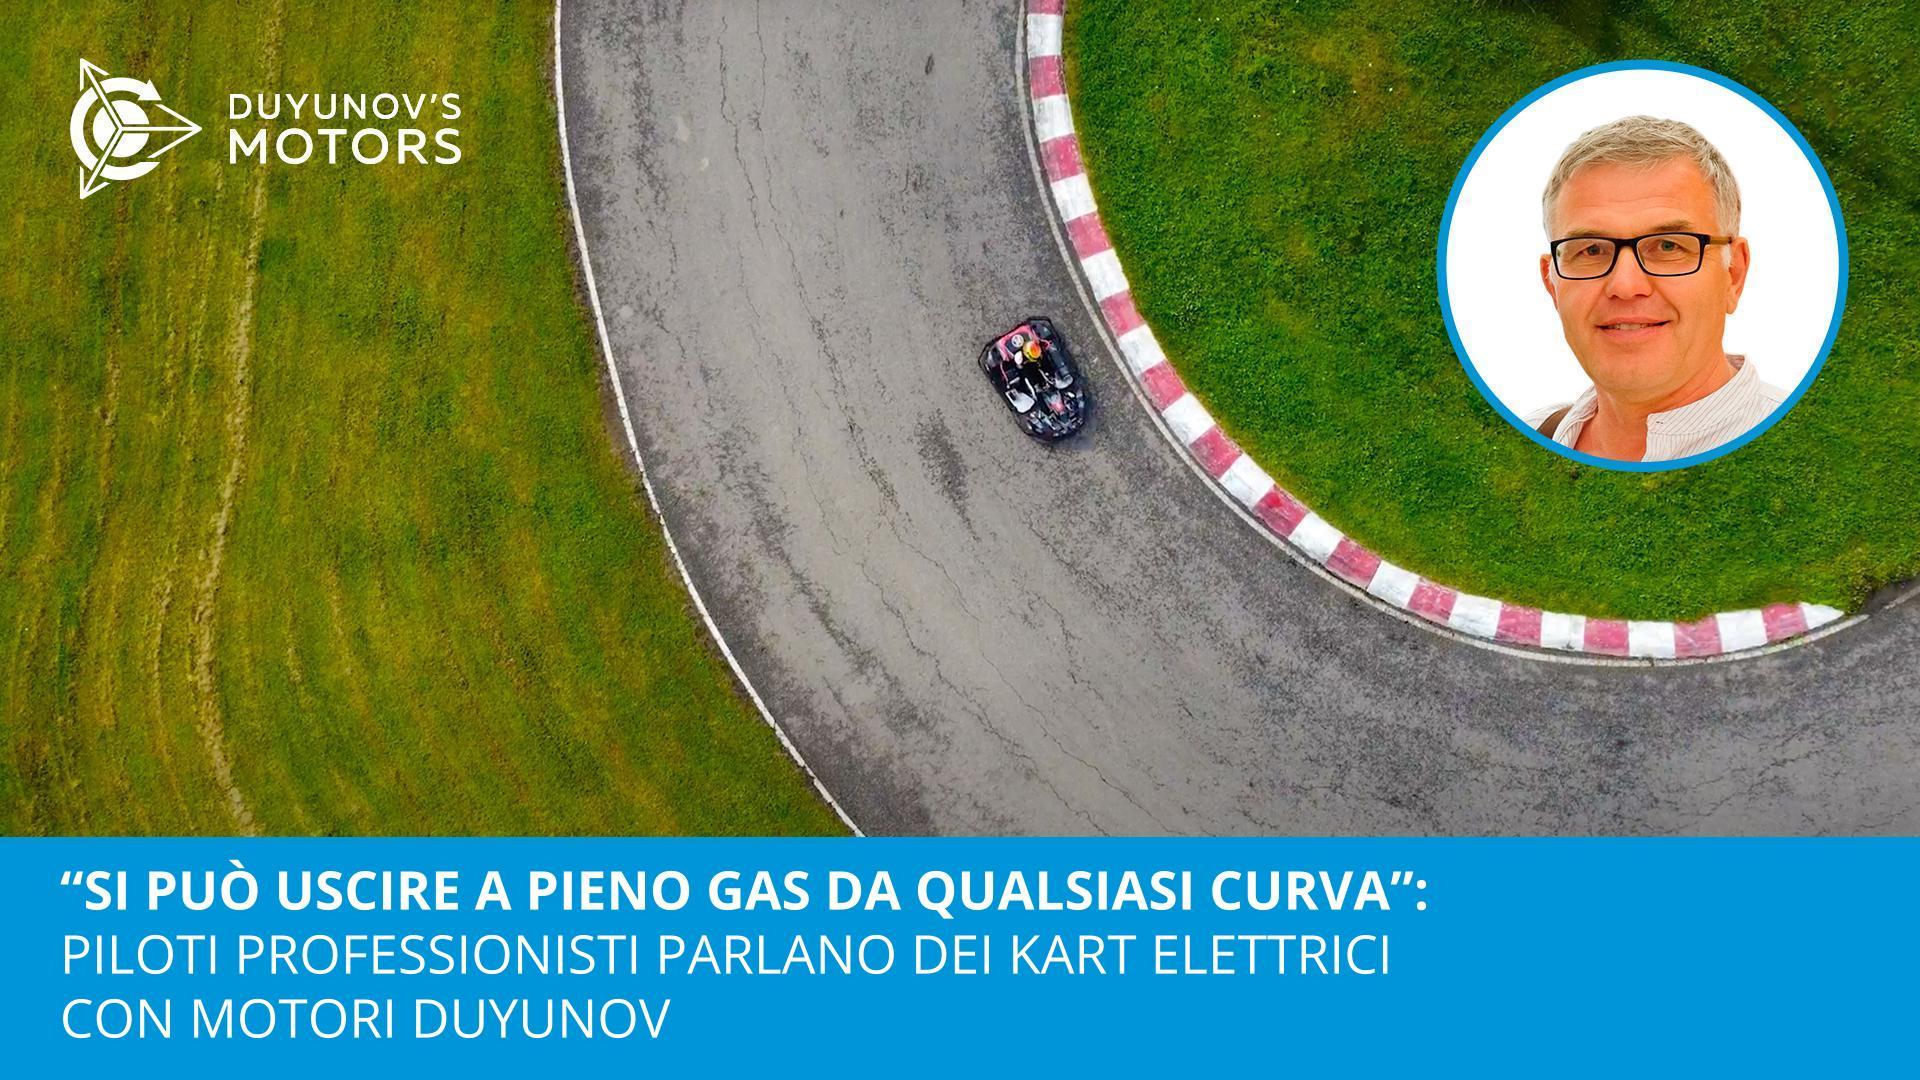 "Si può uscire a tutto gas da qualsiasi curva": piloti professionisti parlano dei kart elettrici con motori Duyunov